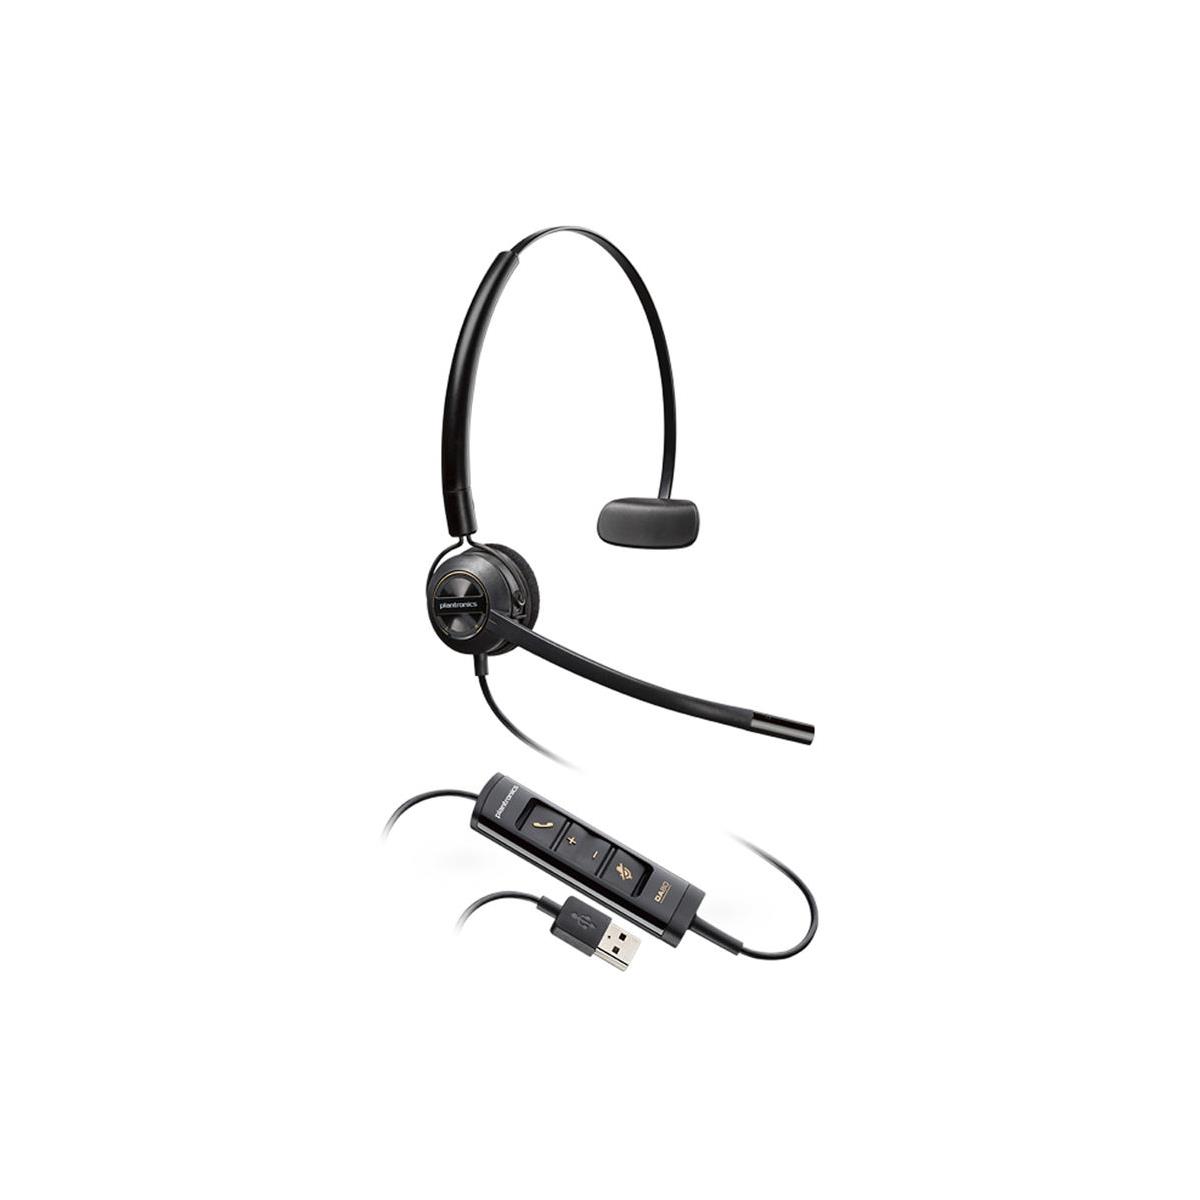 Image of Plantronics EncorePro HW545 USB Convertible Monaural Noise-Canceling Headset